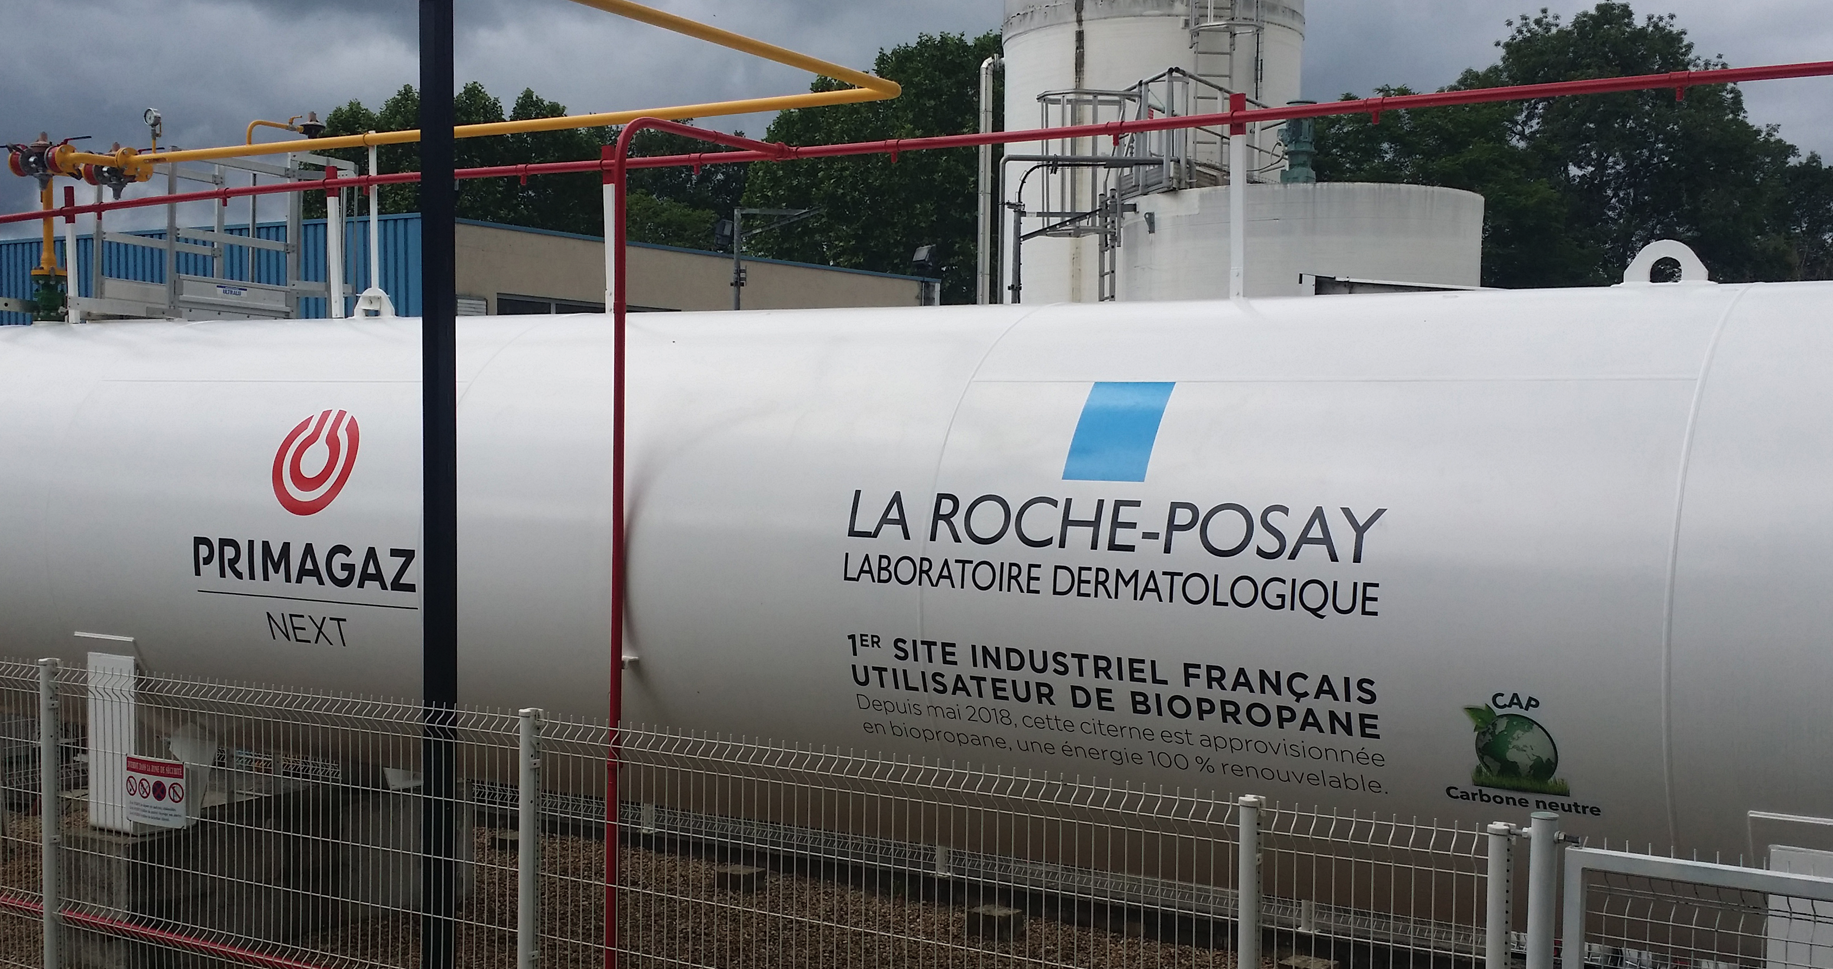 La-Roche Posay and Primagaz